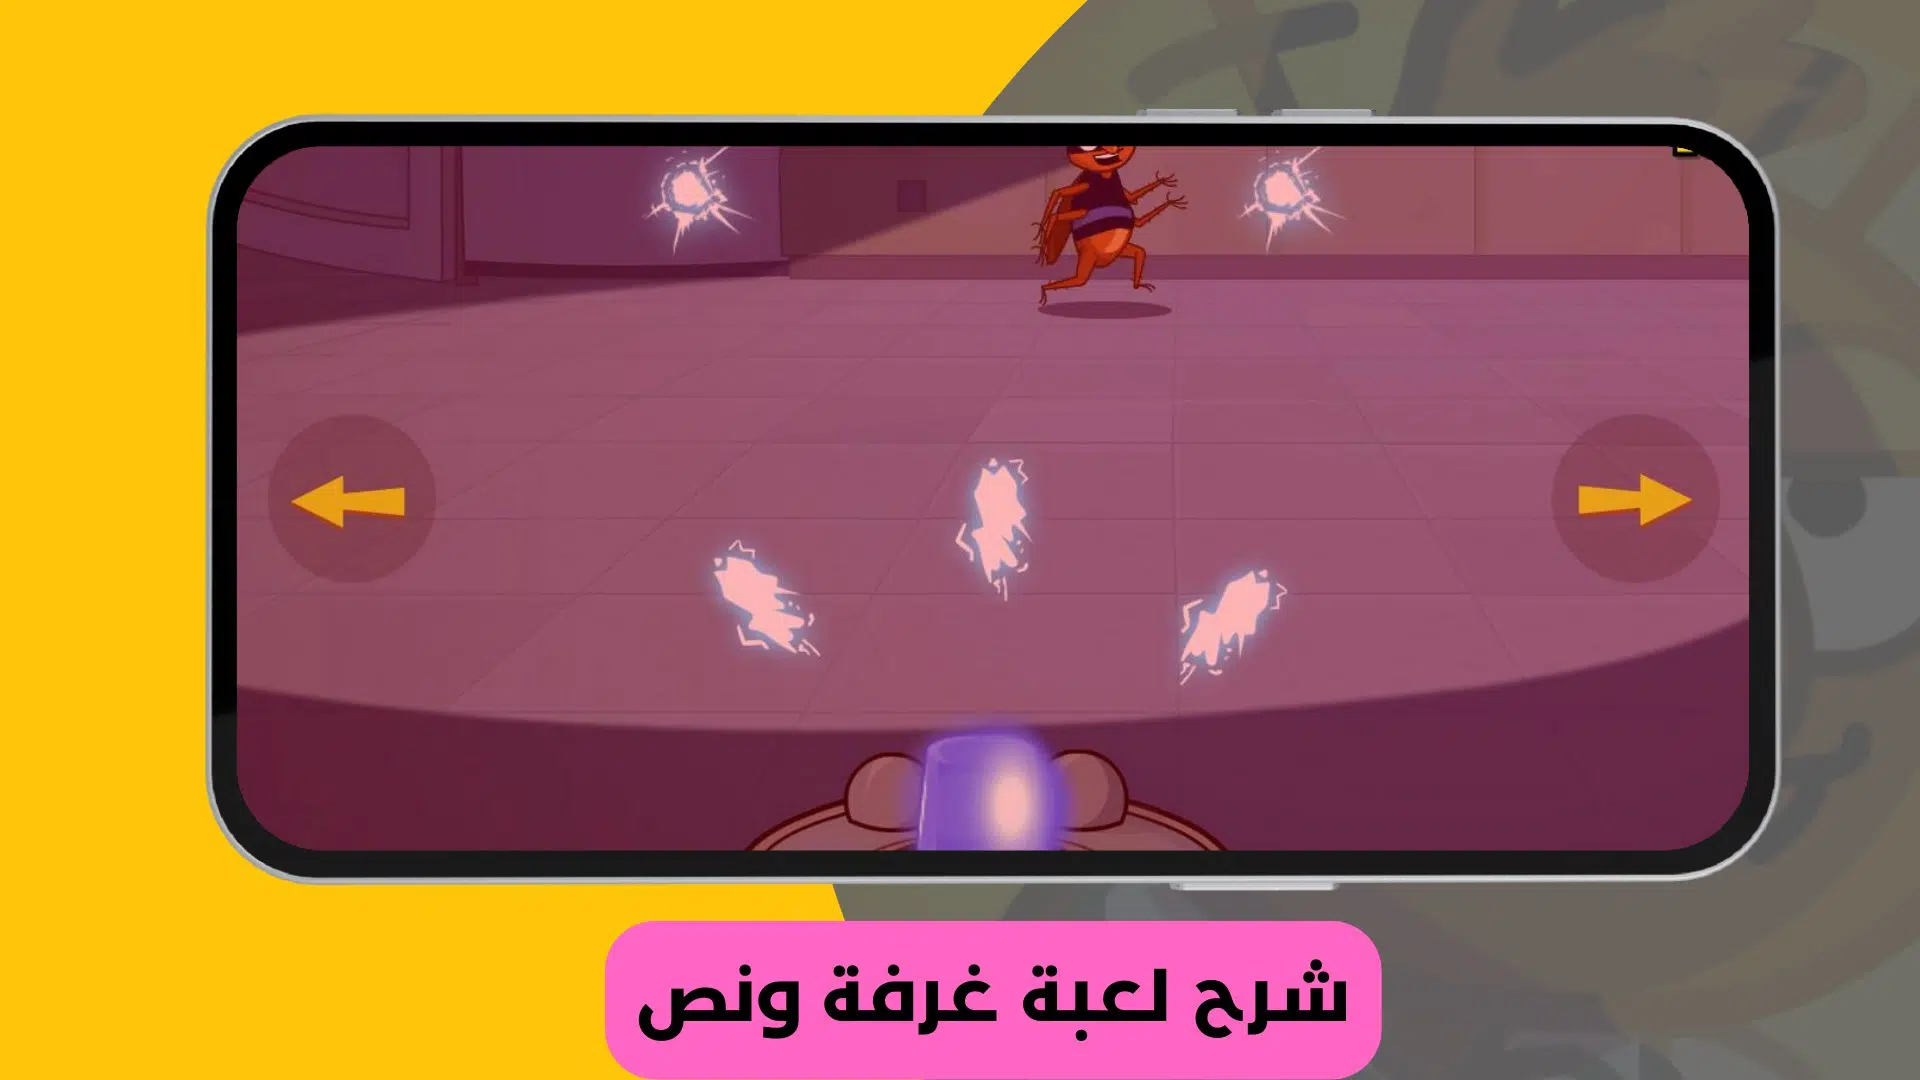 تنزيل لعبة غرفة ونص 2 بالعربي